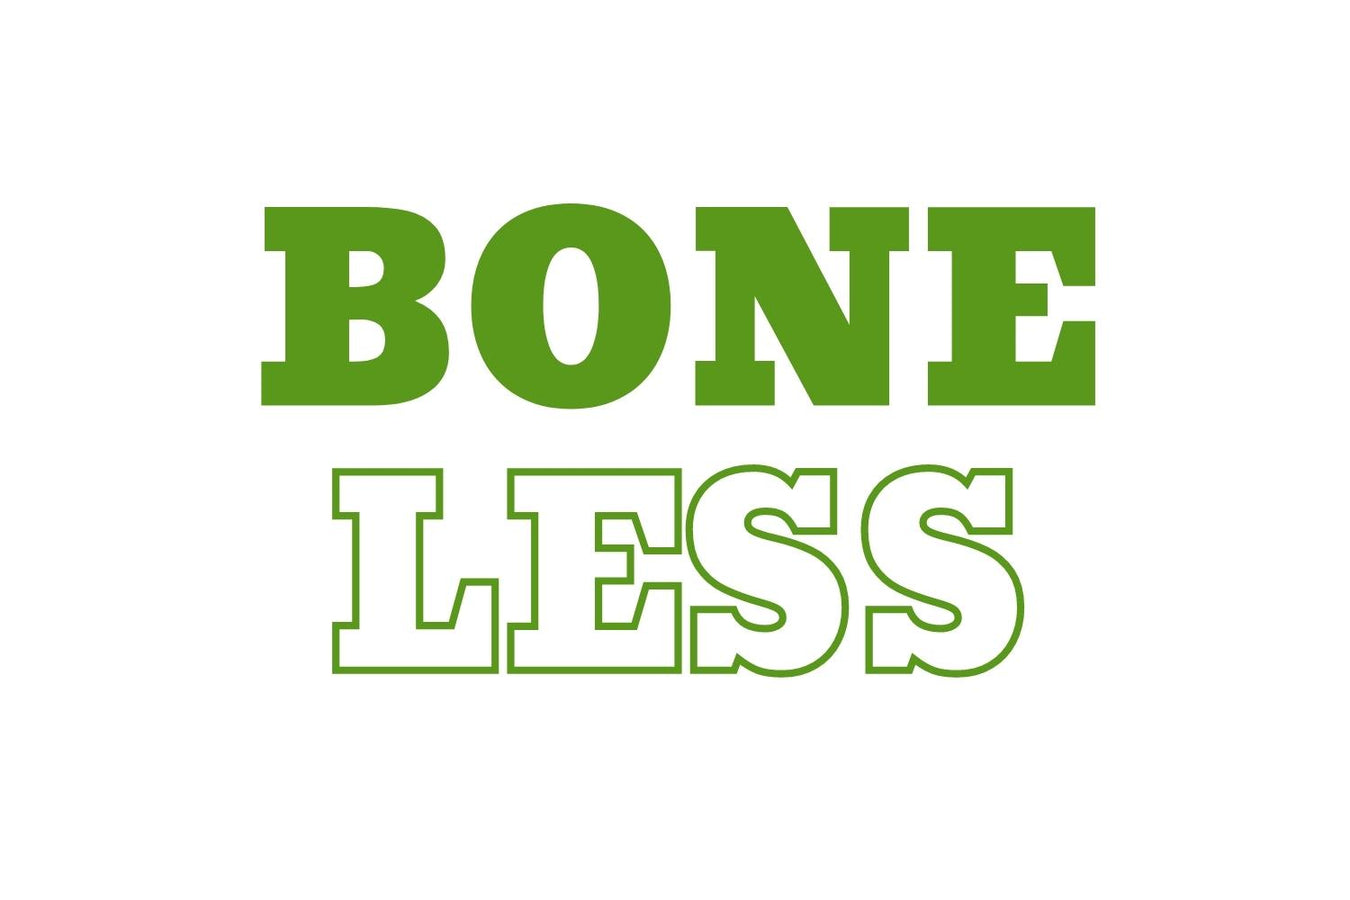 Boneless (No Thorns)